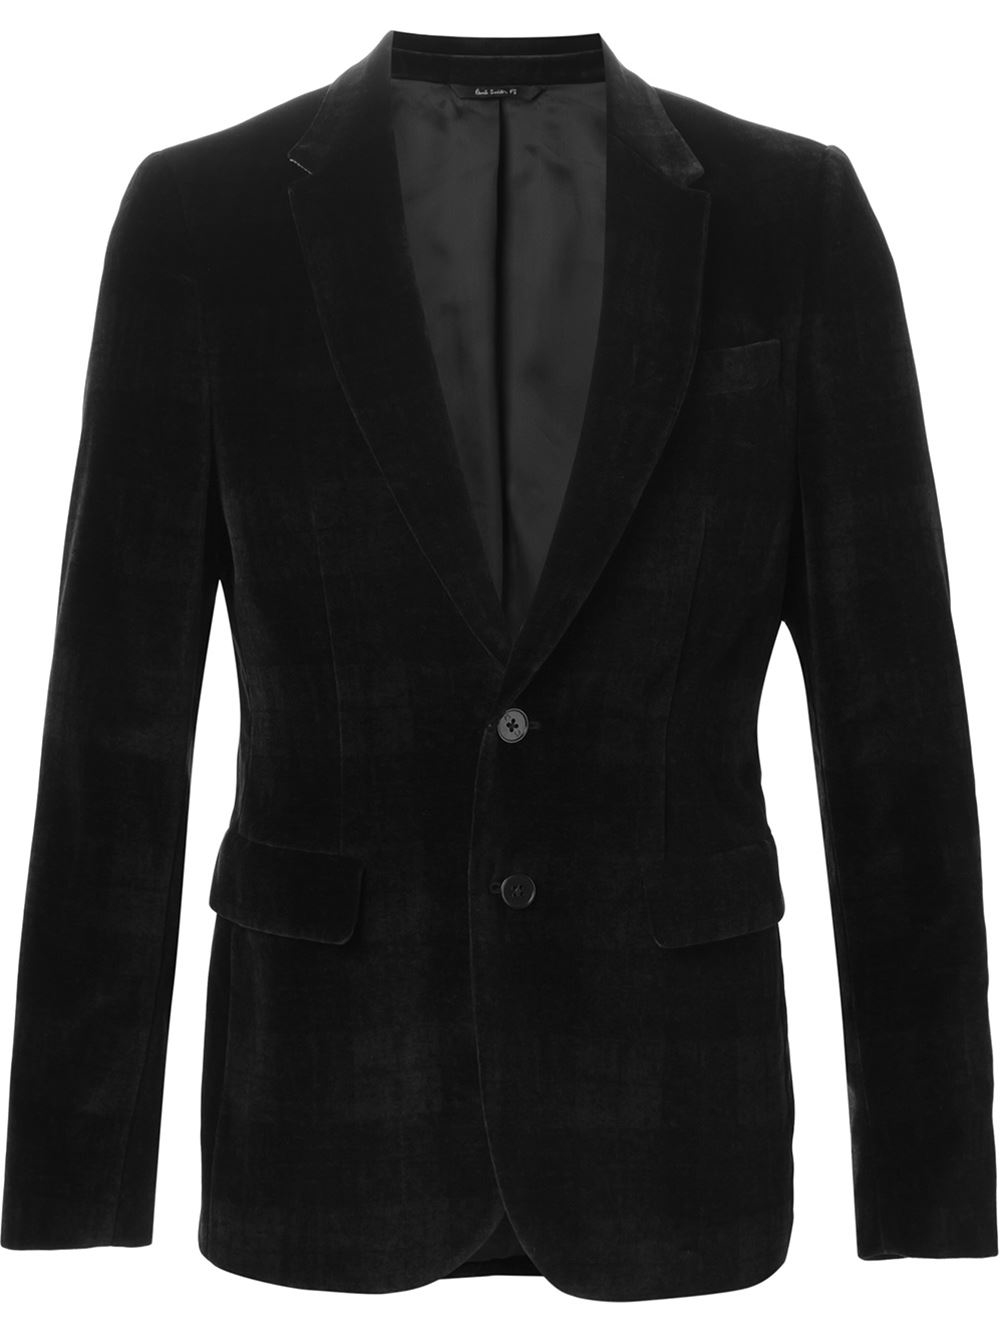 Ps by paul smith Velvet Blazer in Black for Men | Lyst